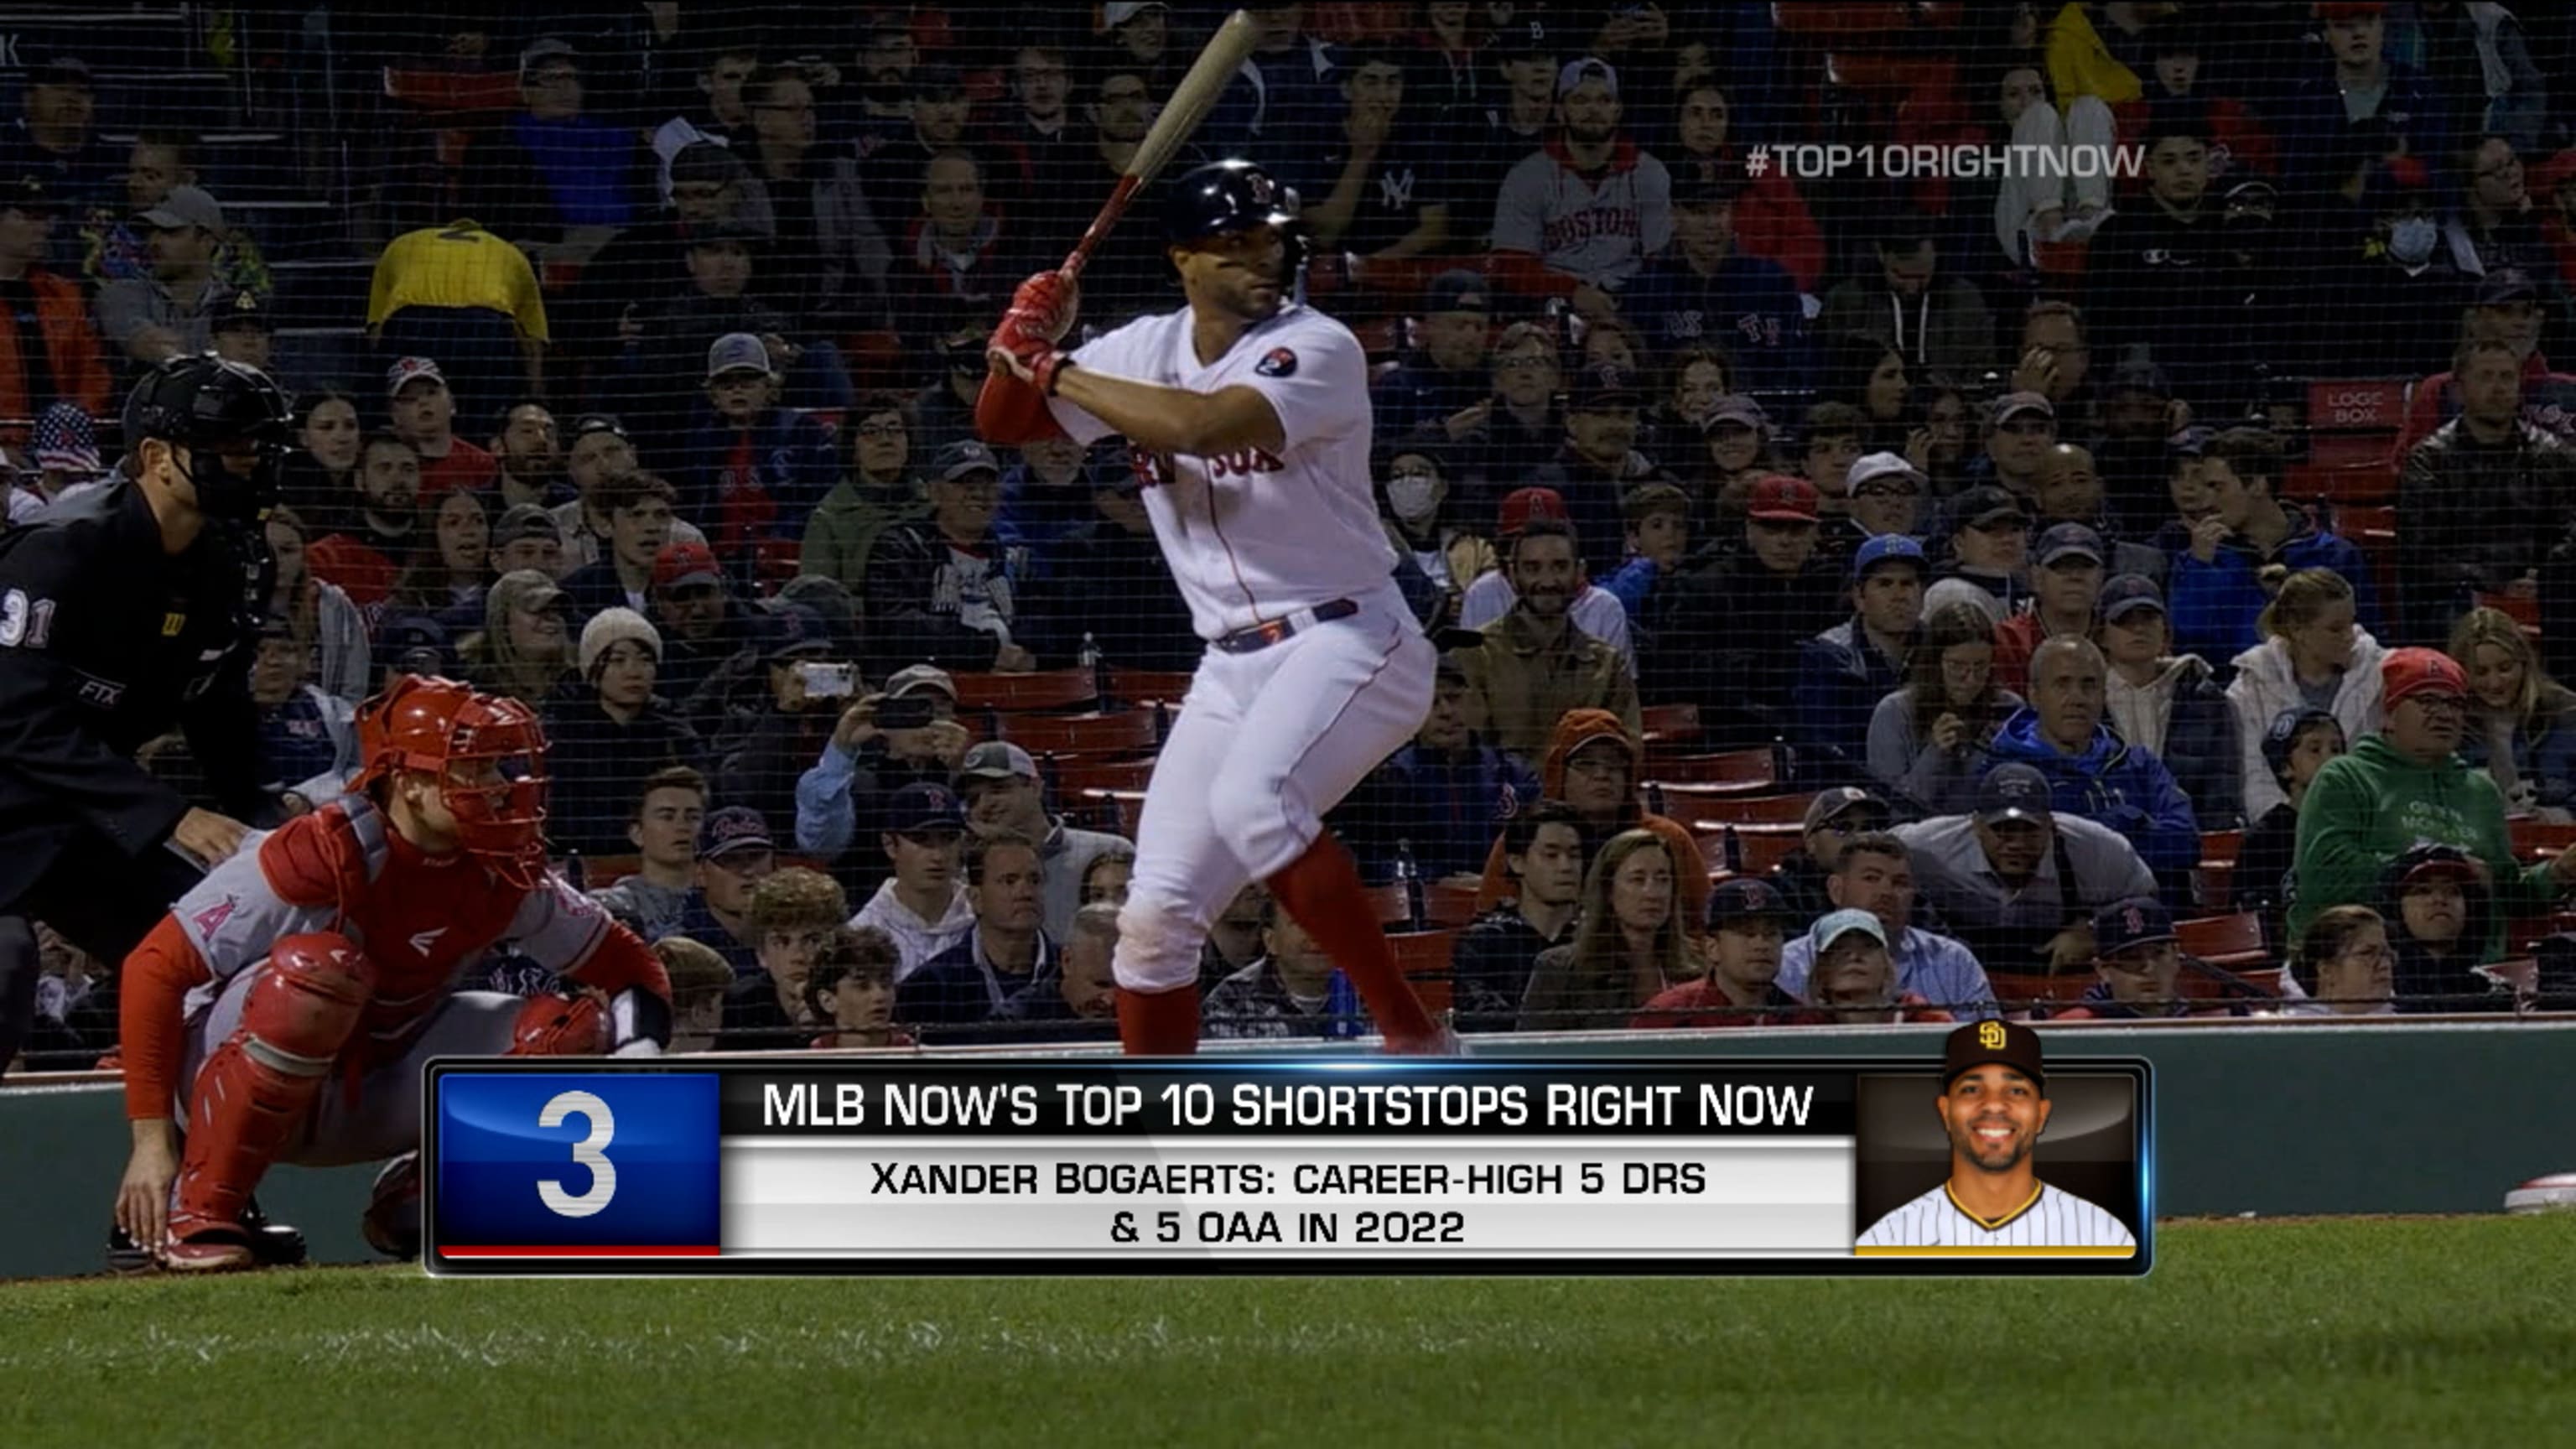 Top 10 Shortstops: #3